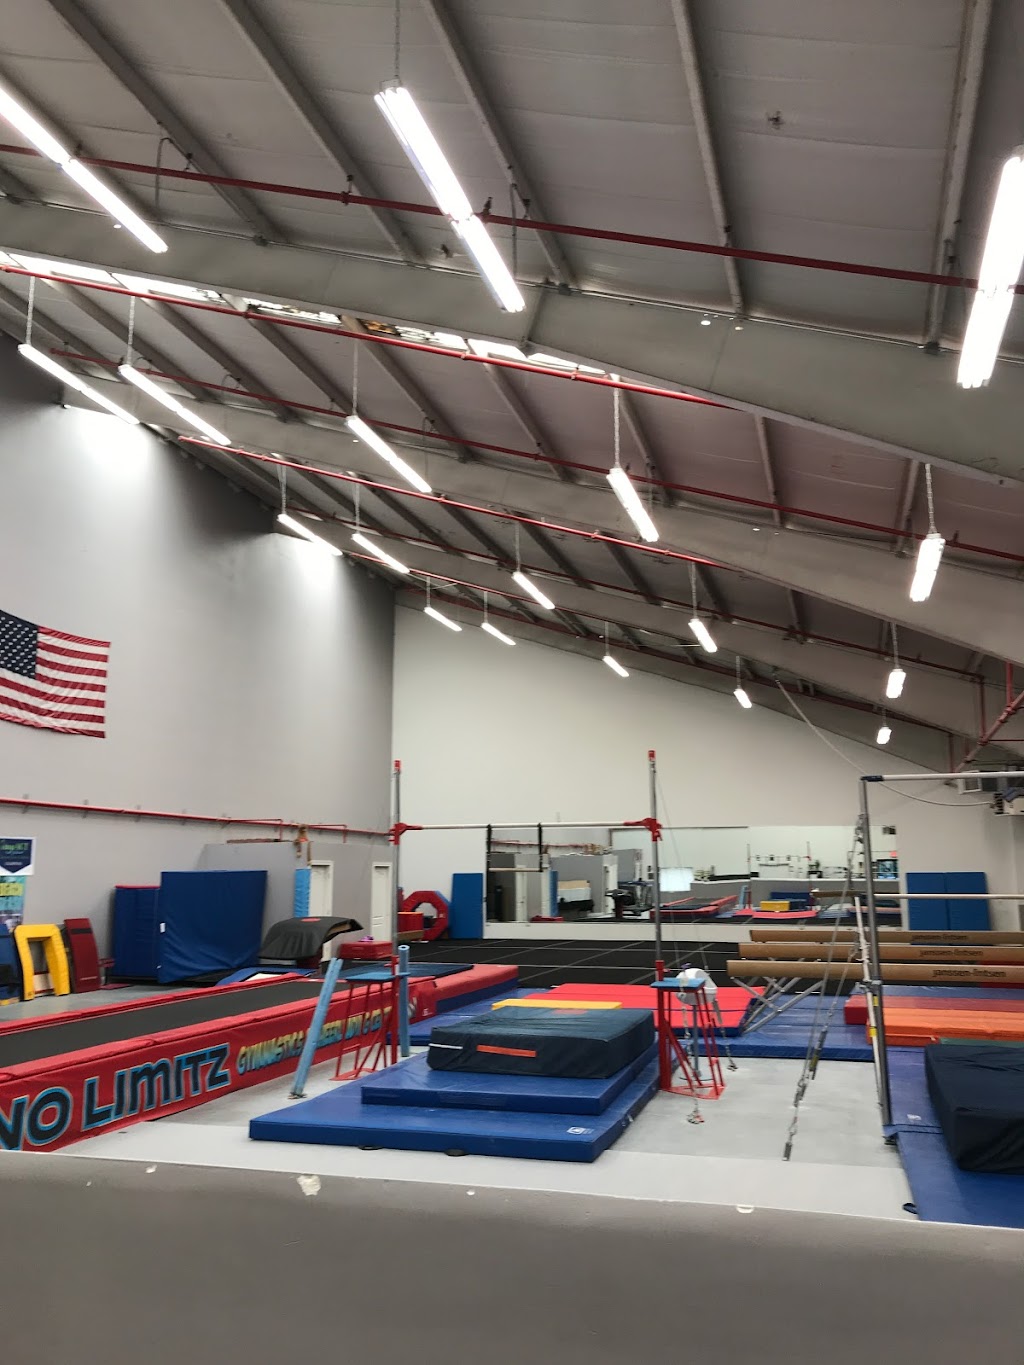 No Limitz Gymnastics and Cheerleading Center | 385 Wild Ave, Staten Island, NY 10314 | Phone: (718) 494-4326